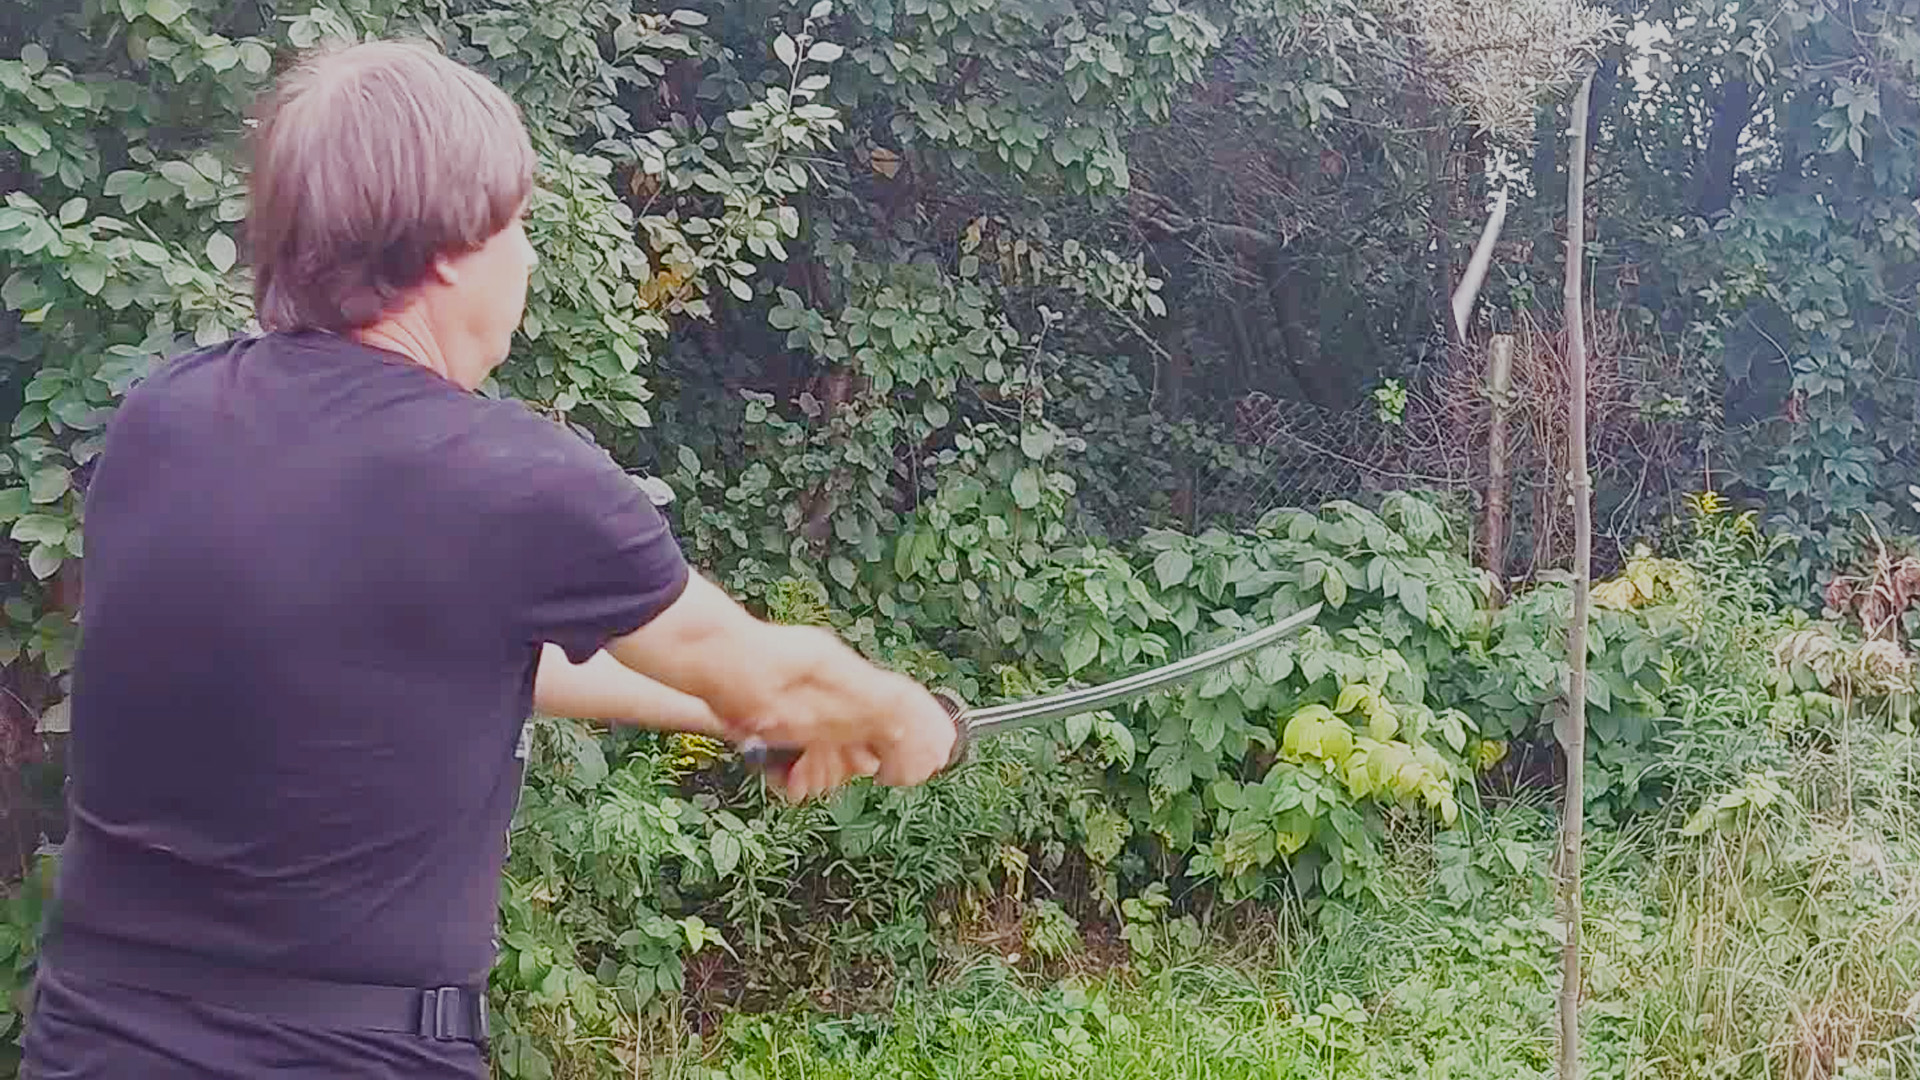 Тамэсигири в школа фехтования катаной: заточка  катаны и рубка  стволика дерева